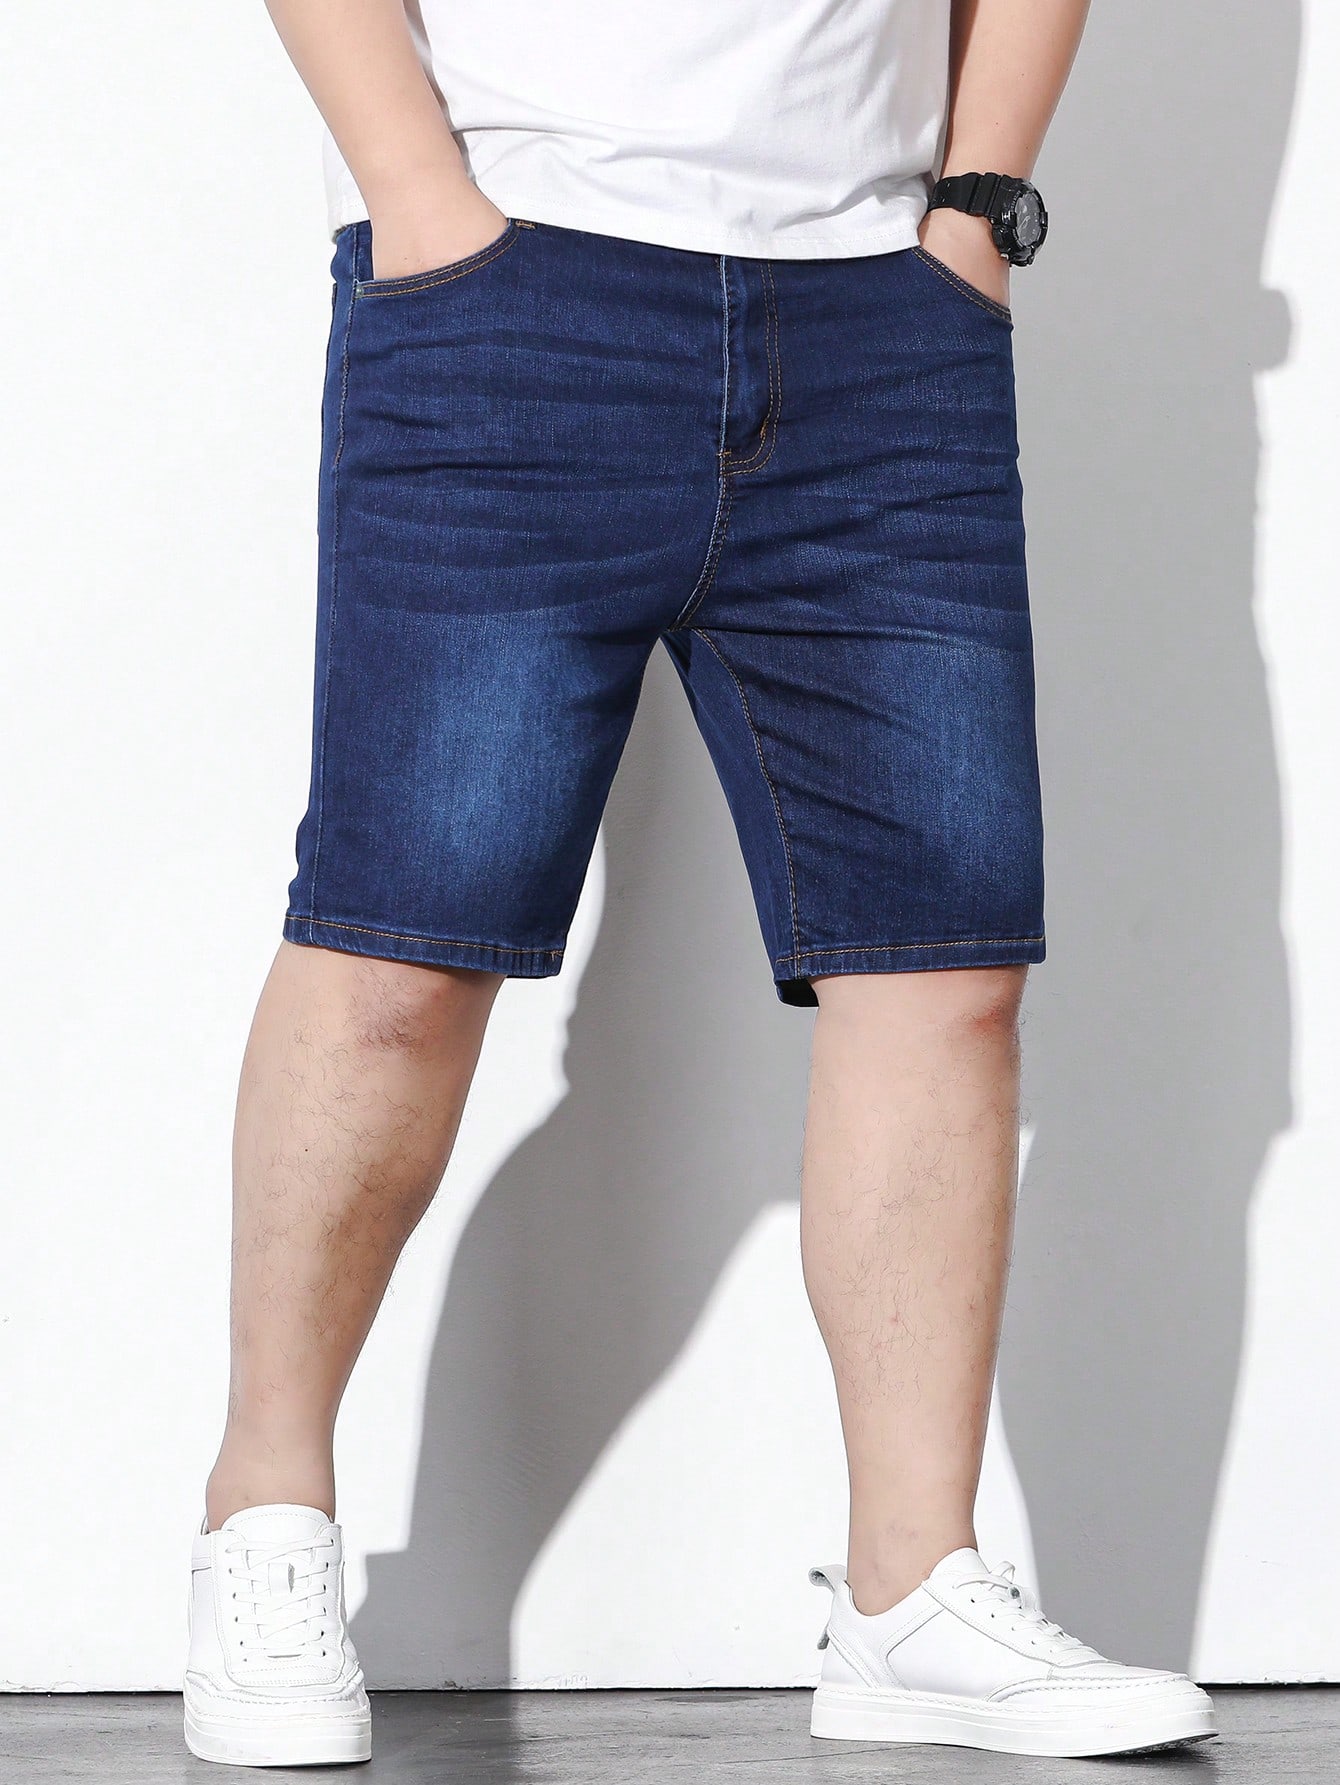 Мужские джинсовые шорты больших размеров Manfinity Homme, синий